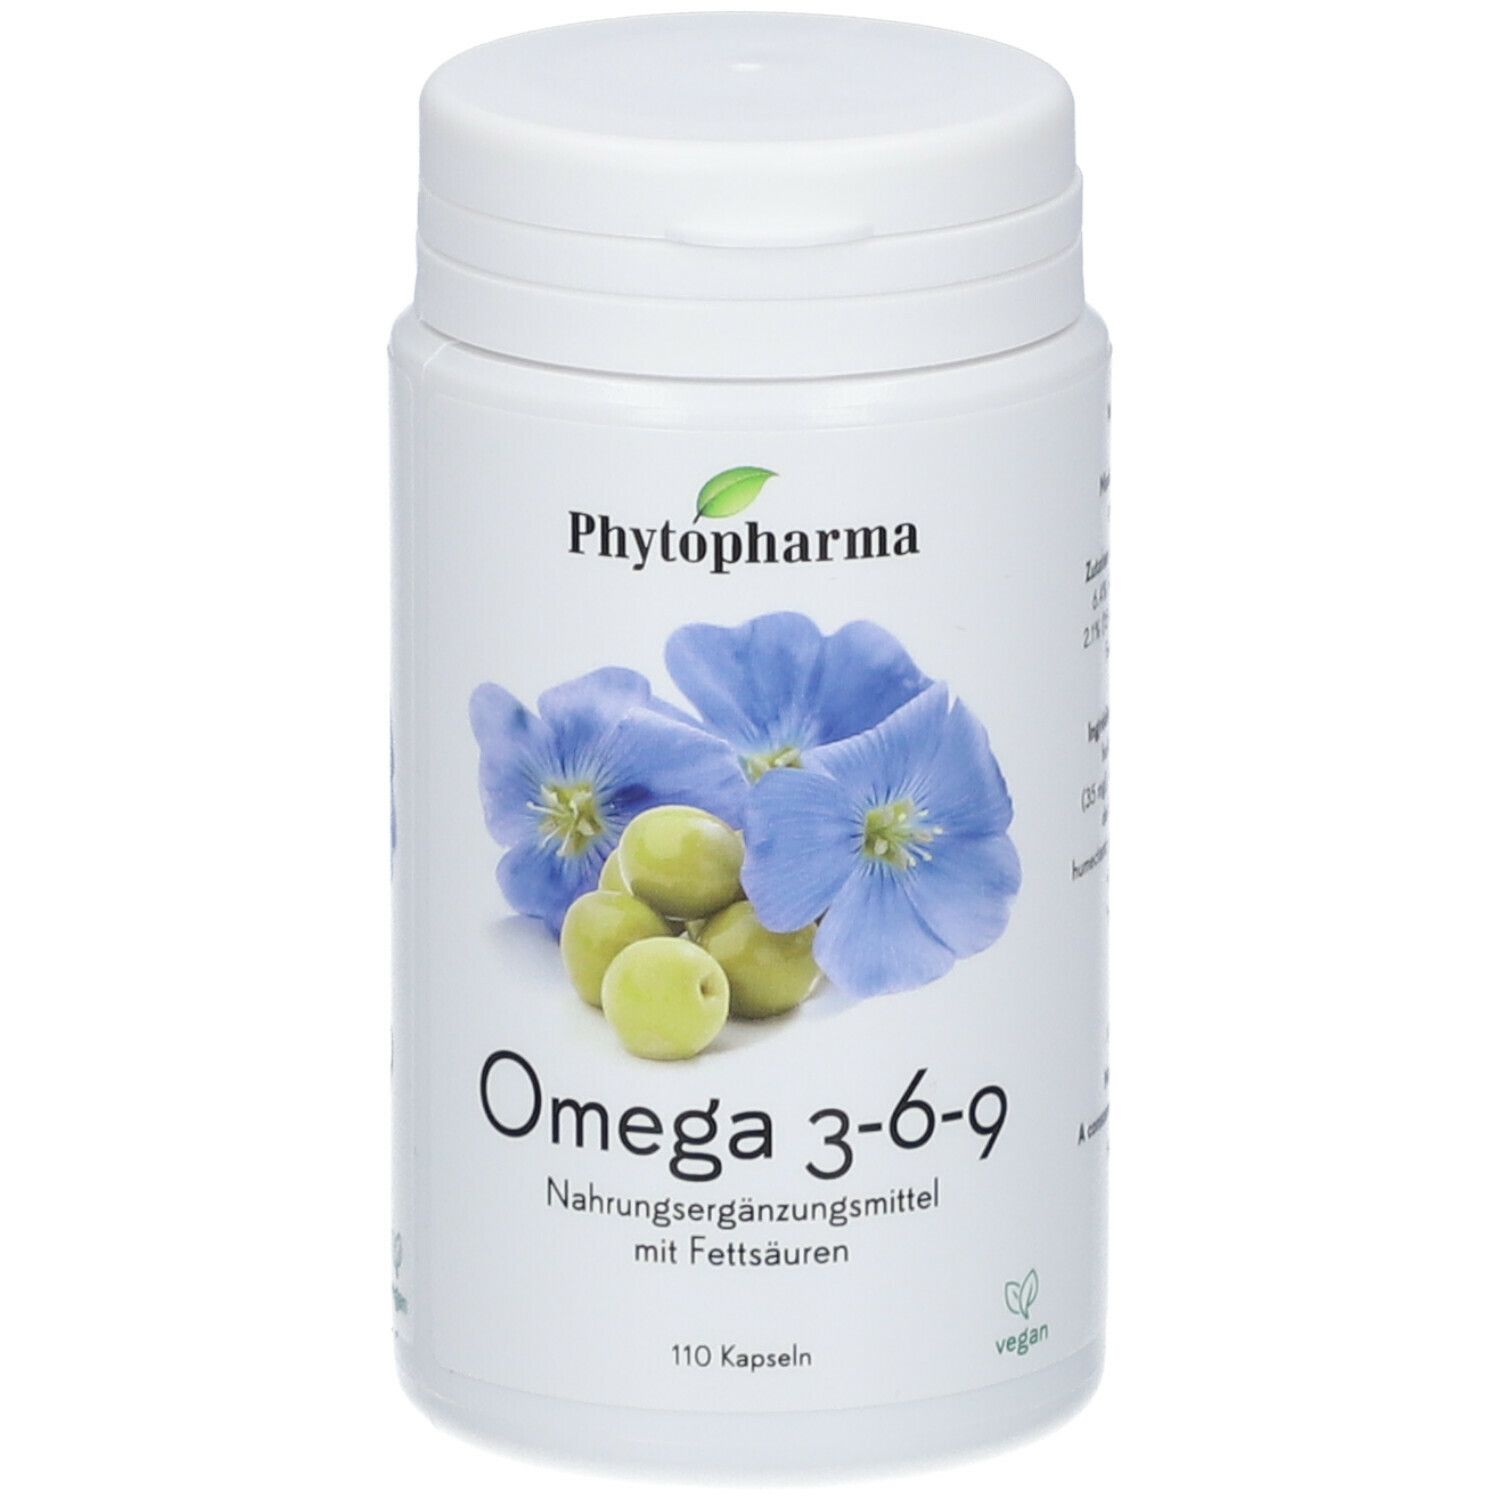 Image of Phytopharma Omega 3-6-9